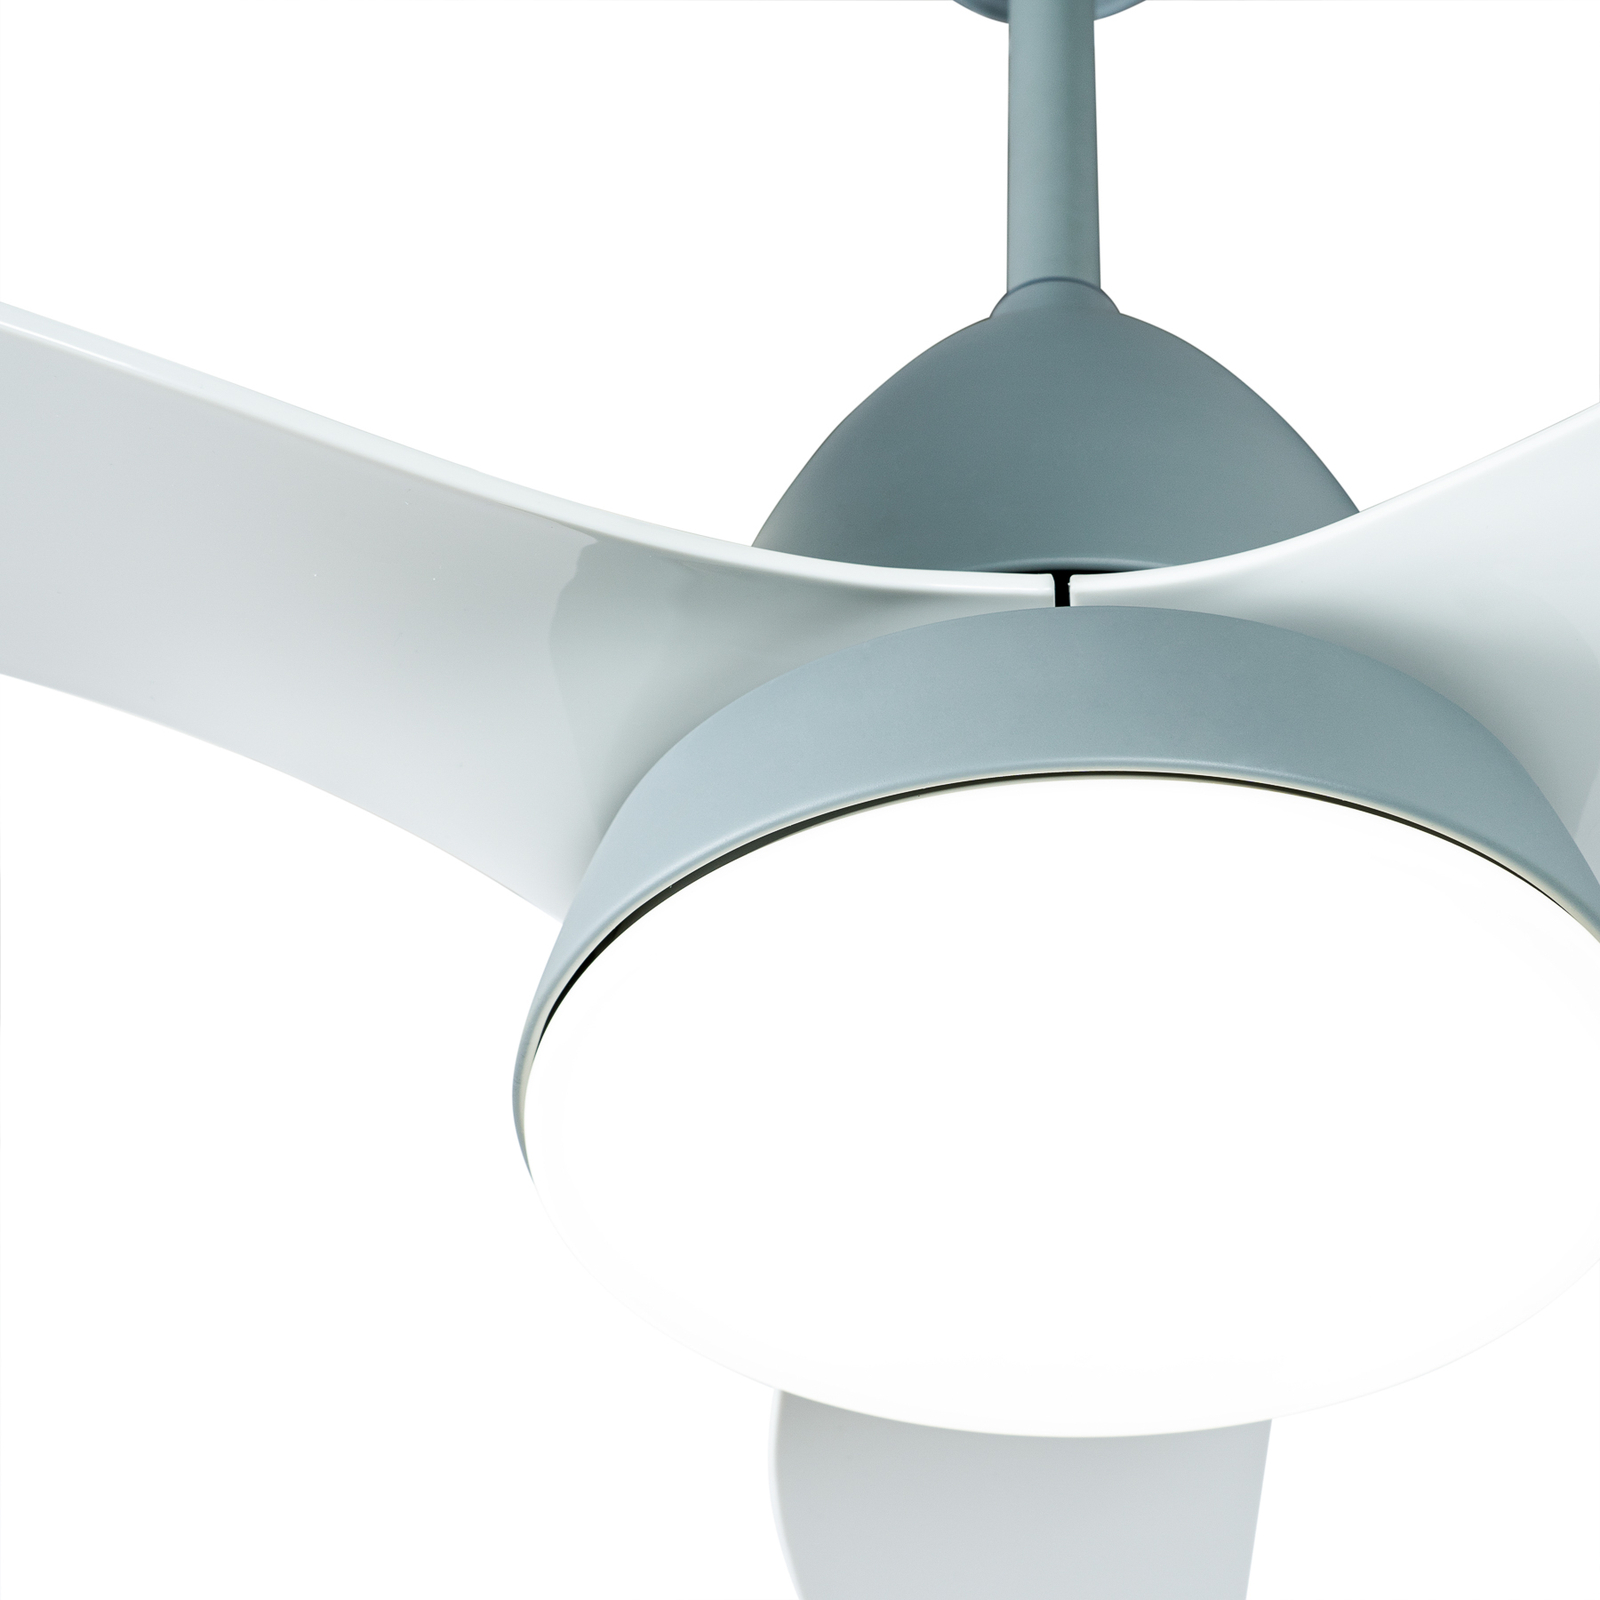 Starluna Coriano LED ceiling fan, grey